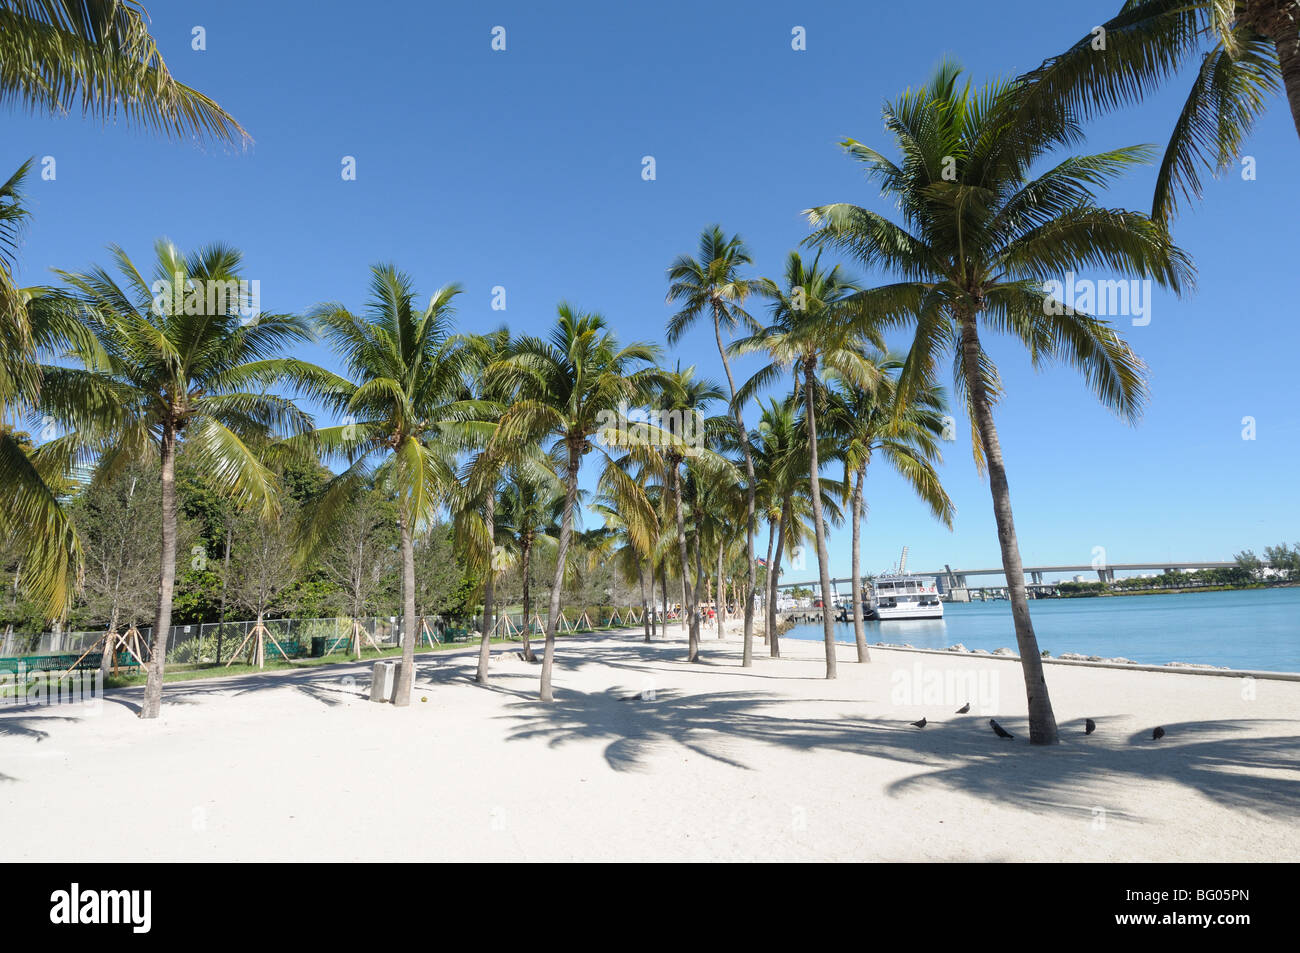 Palm Trees in Downtown Miami, Florida USA Stock Photo